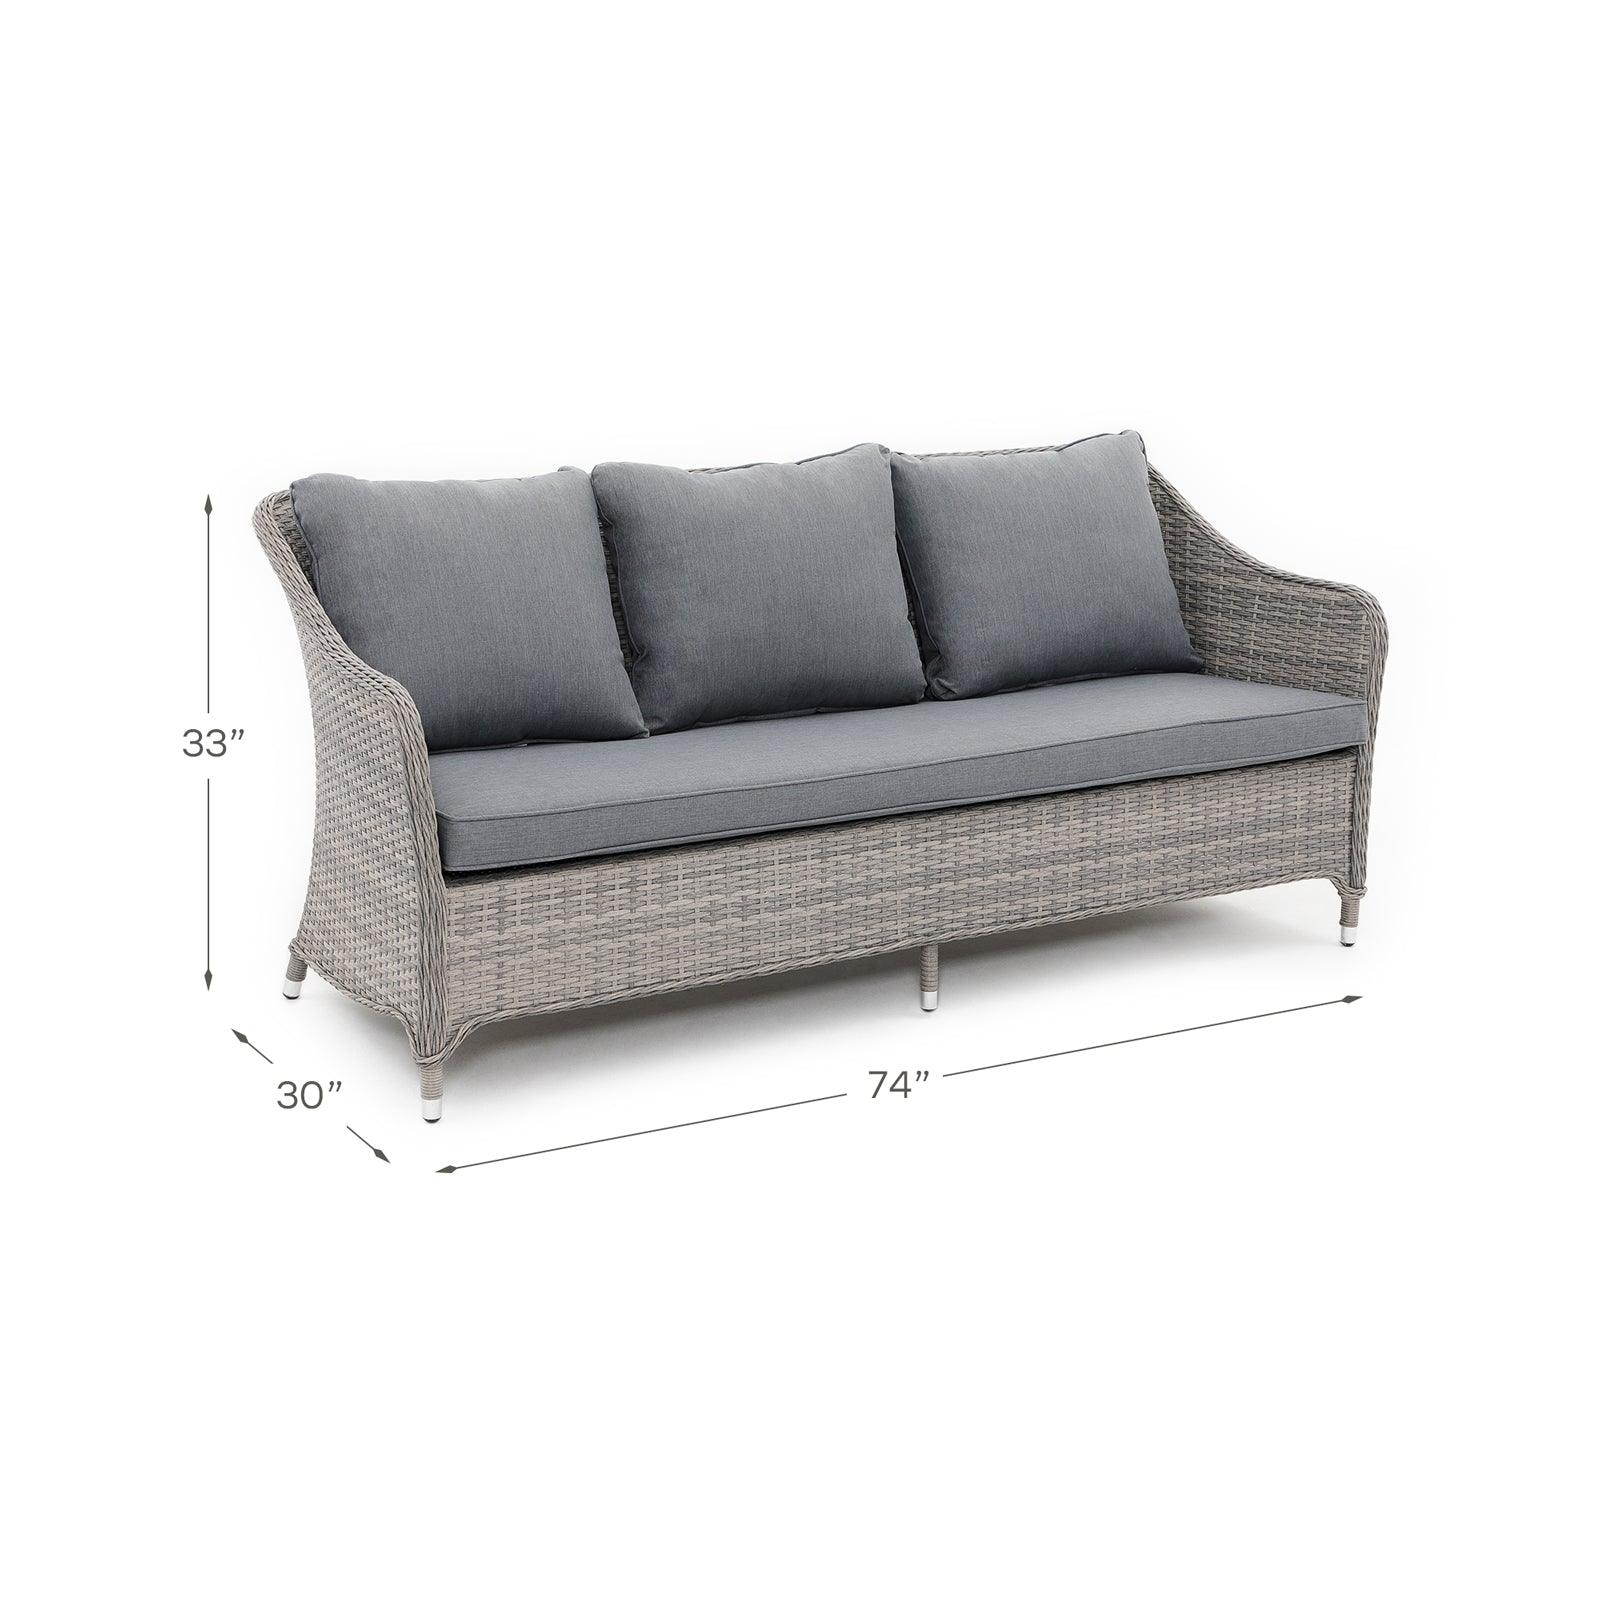 Irati wicker outdoor sofa, dimension#Color_Grey